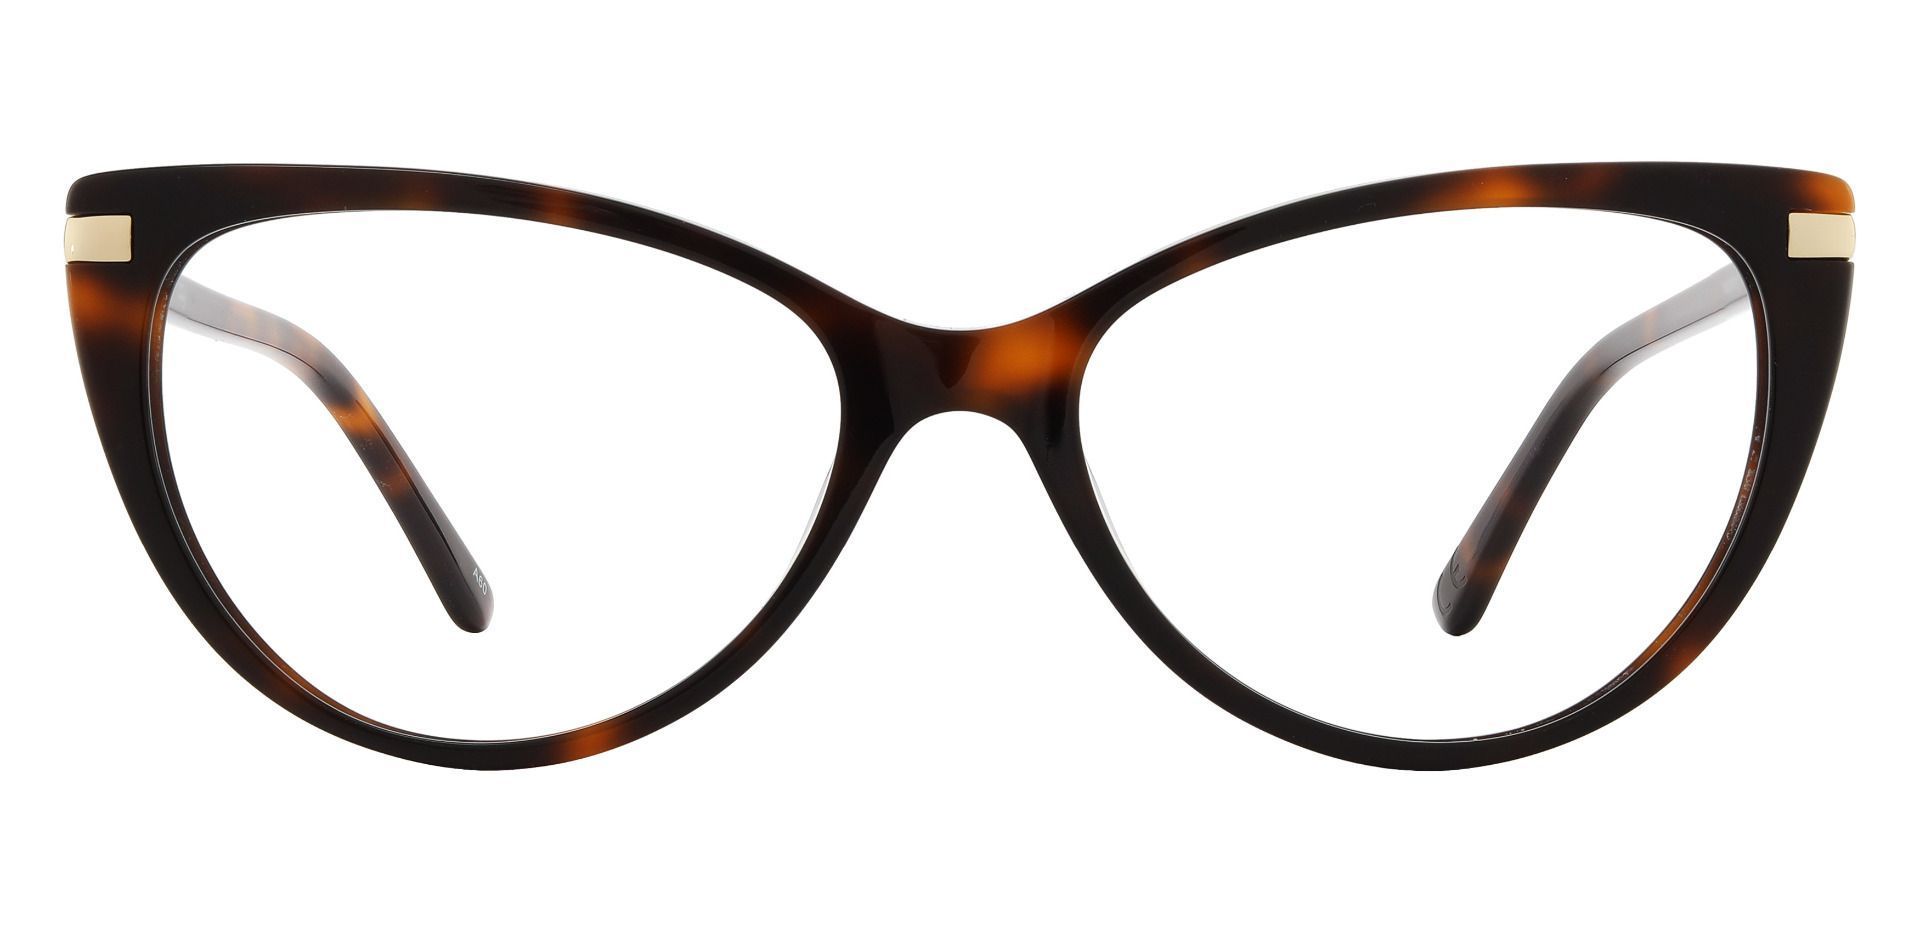 Starla Cat Eye Progressive Glasses - Black | Women's Eyeglasses | Payne ...